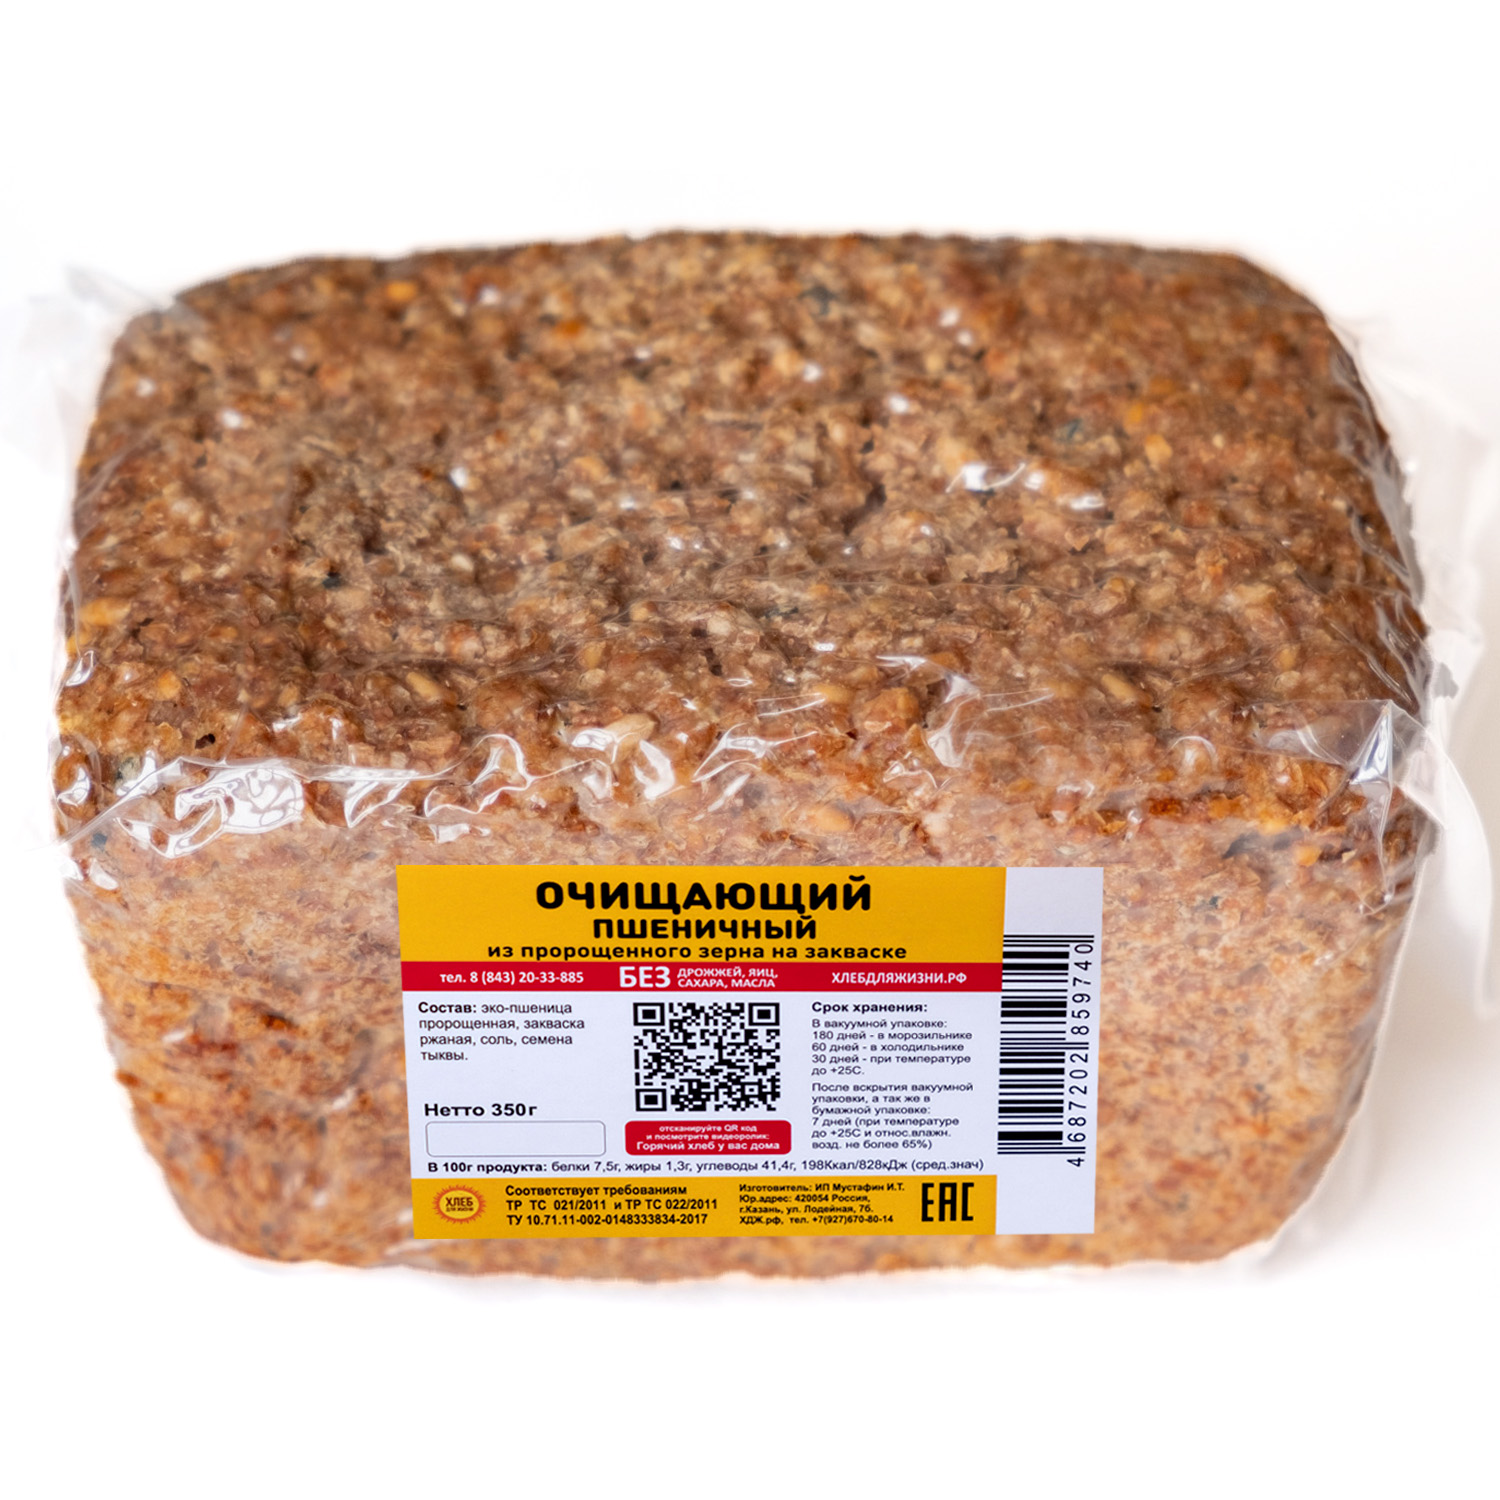 Хлеб для Жизни пшеничный очищающий, цельнозерновой, бездрожжевой, на закваске, 350 г